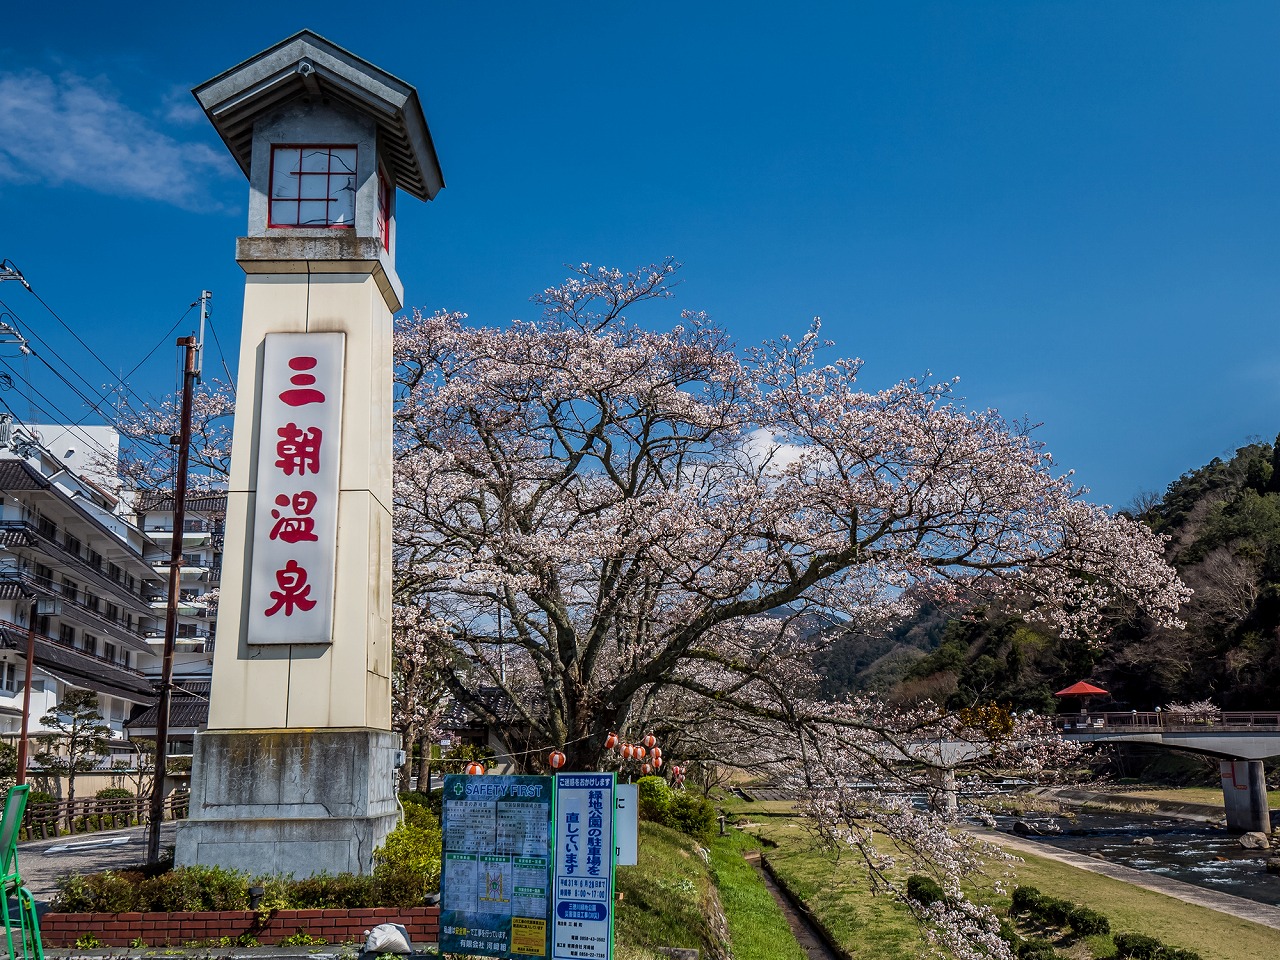 21年版 鳥取の温泉旅館おすすめ30選 中国地方在住者が徹底紹介 源泉かけ流し 老舗 家族向け 絶景など アニバーサリーズマガジン